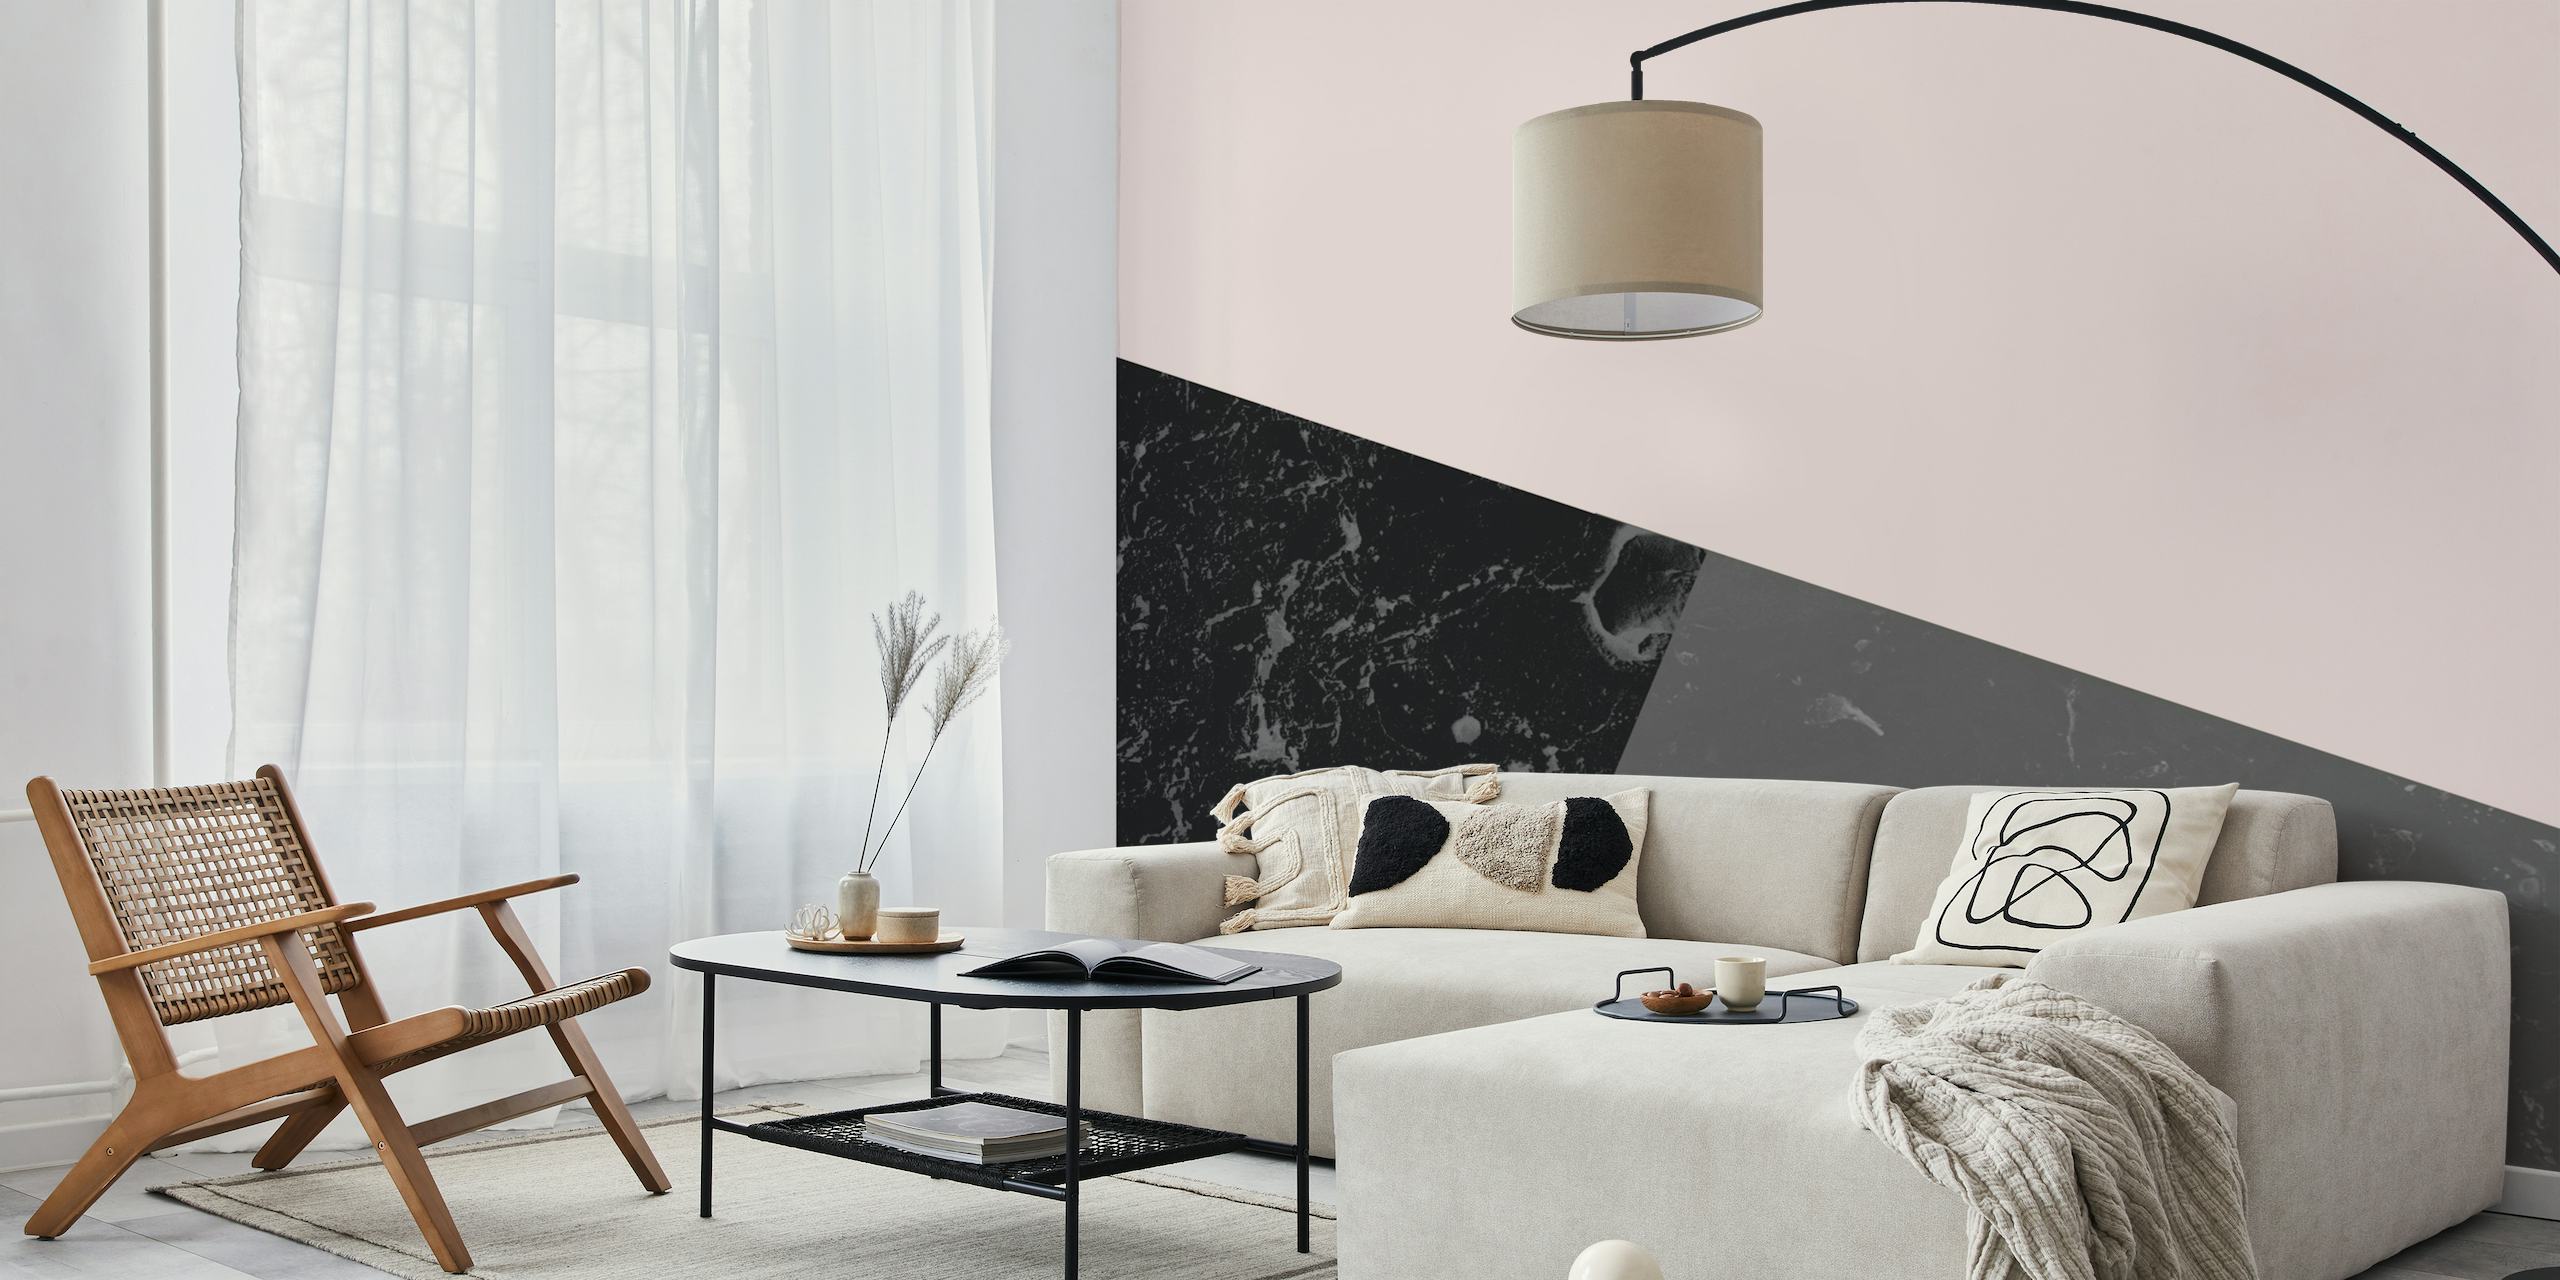 Marble Geometric Pink Musta seinämaalaus, jossa on sekoitus mustaa marmoria, mattapinkkiä ja harmaan sävyjä trendikkäässä muotoilussa.